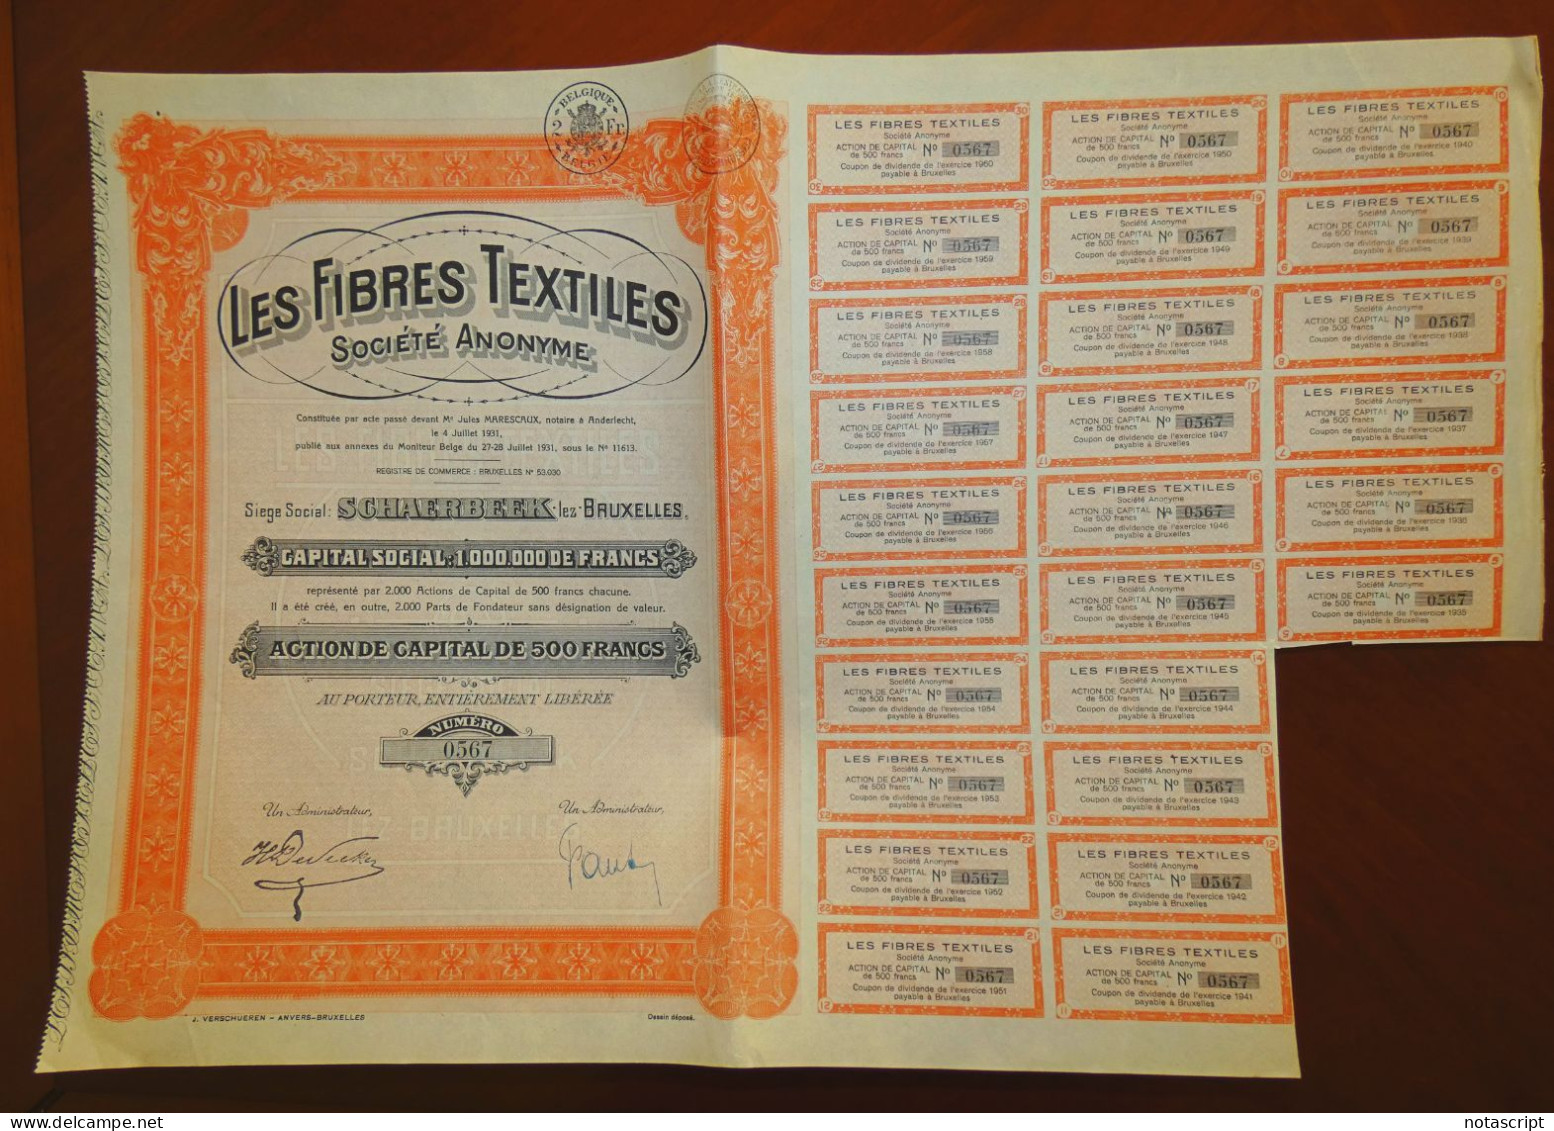 Les Fibres Textiles 1931 Schaerbeek,Brussels  Share Certificate - Textile